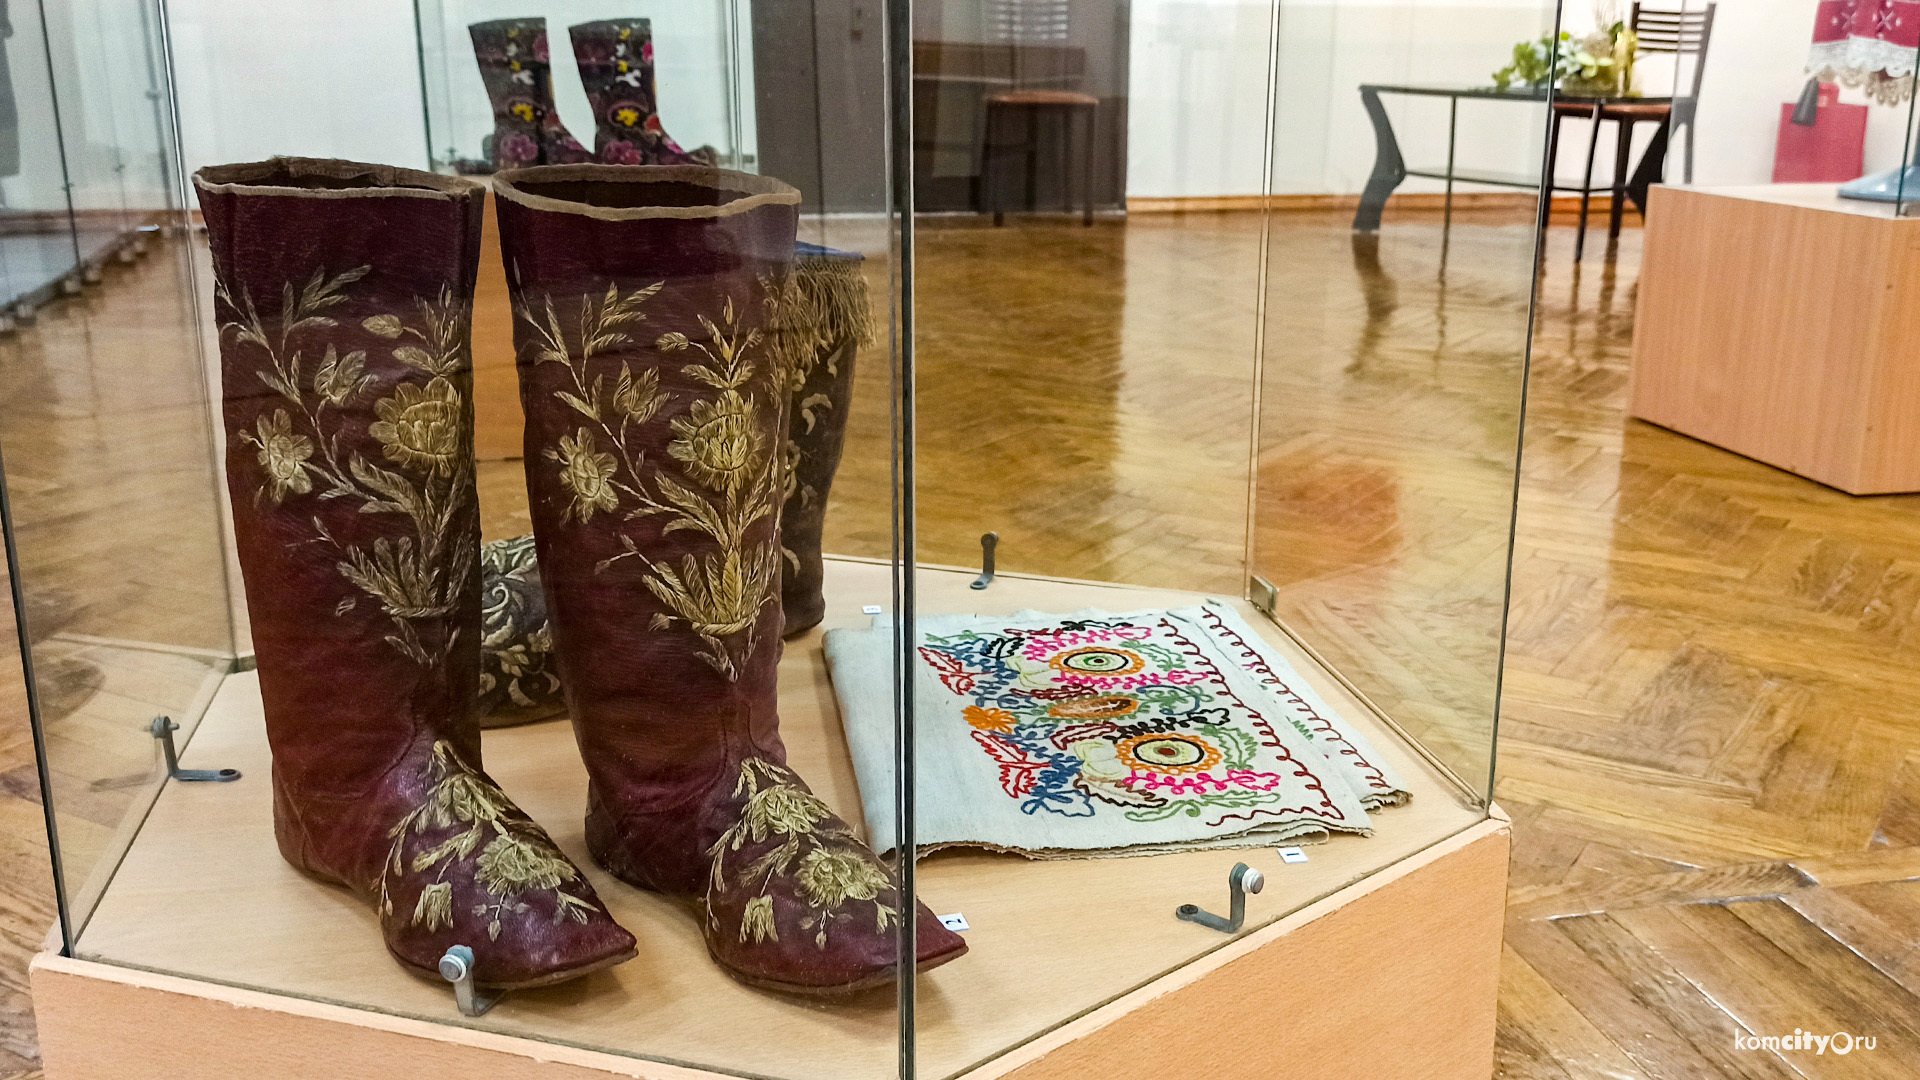 Жителей Комсомольска-на-Амуре приглашают принести в музей предметы народного искусства, сделанные своими руками